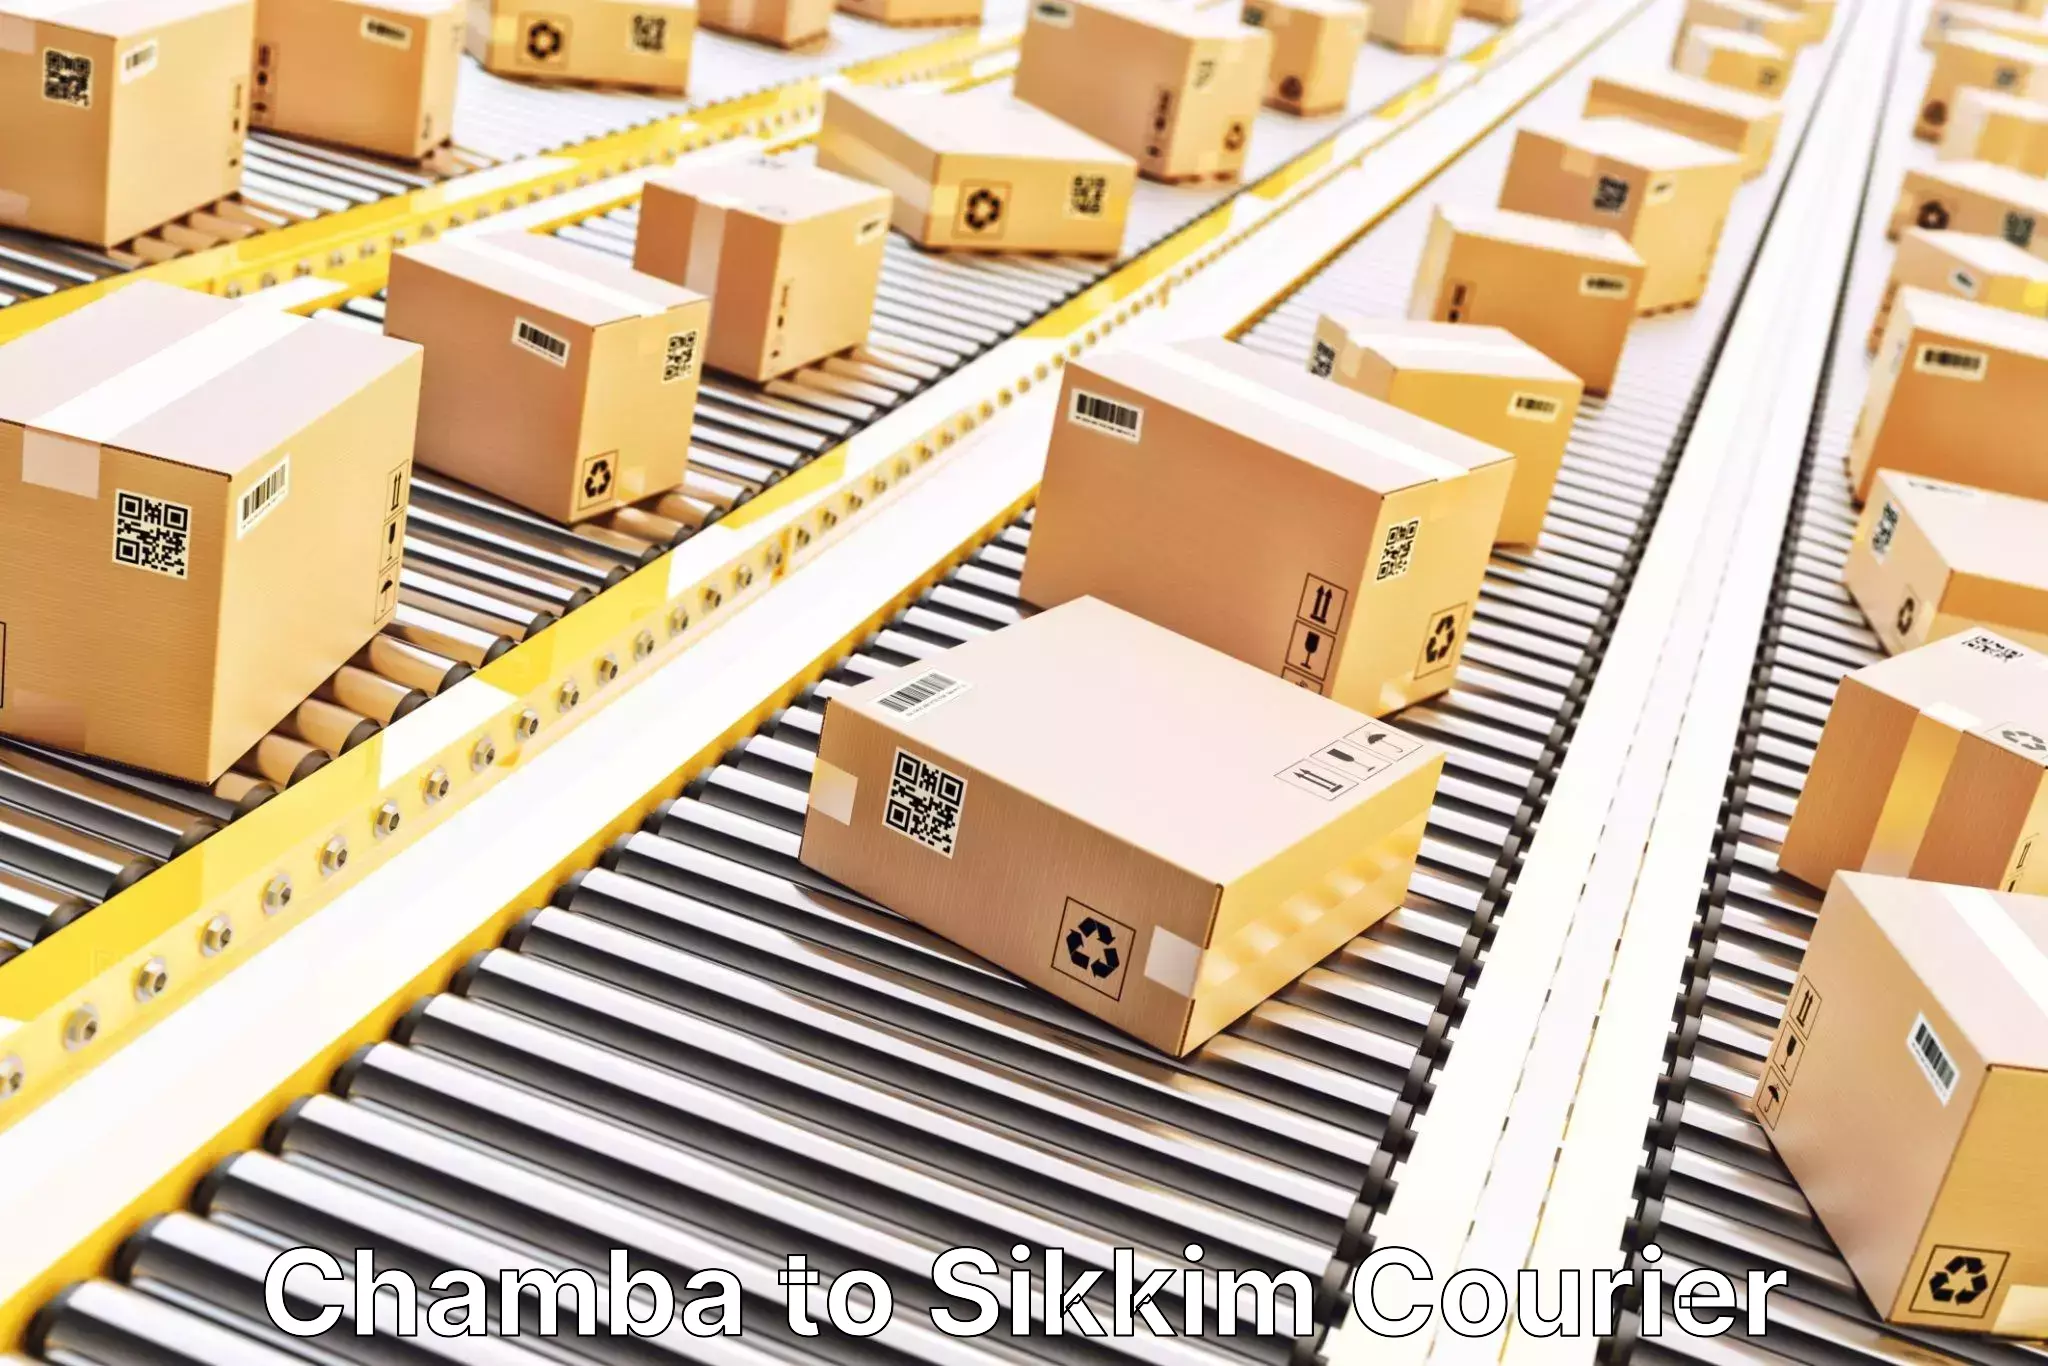 Global logistics network Chamba to South Sikkim